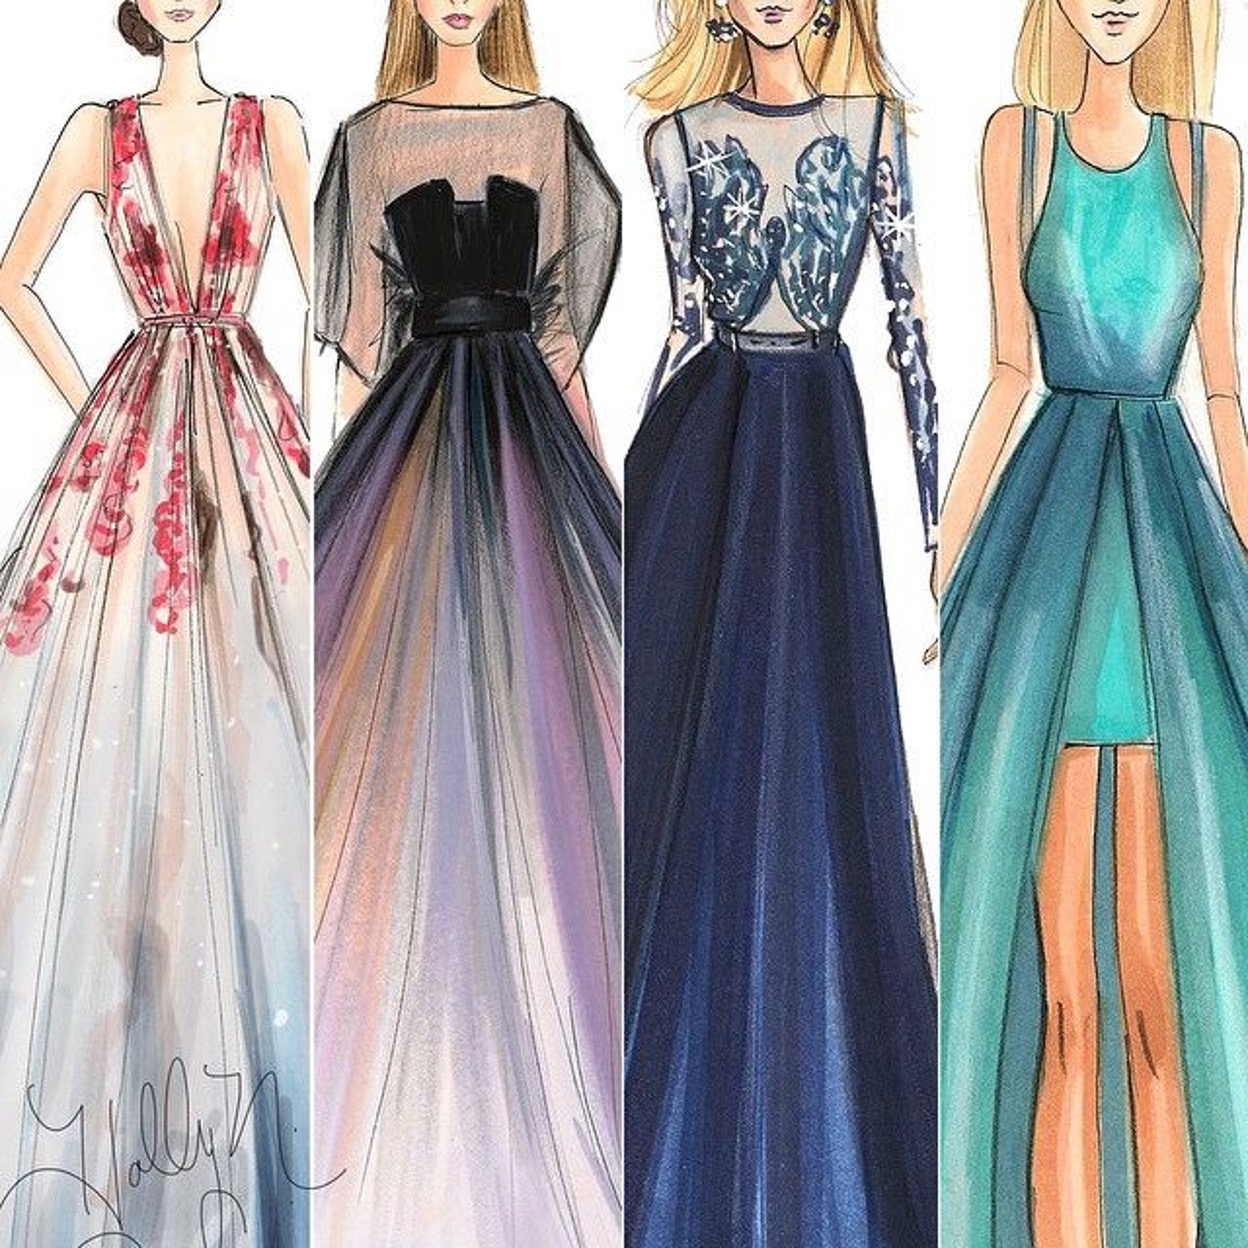 10 mẫu đầm dạ hội đẹp sang trọng & cách chọn đầm cực chuẩn